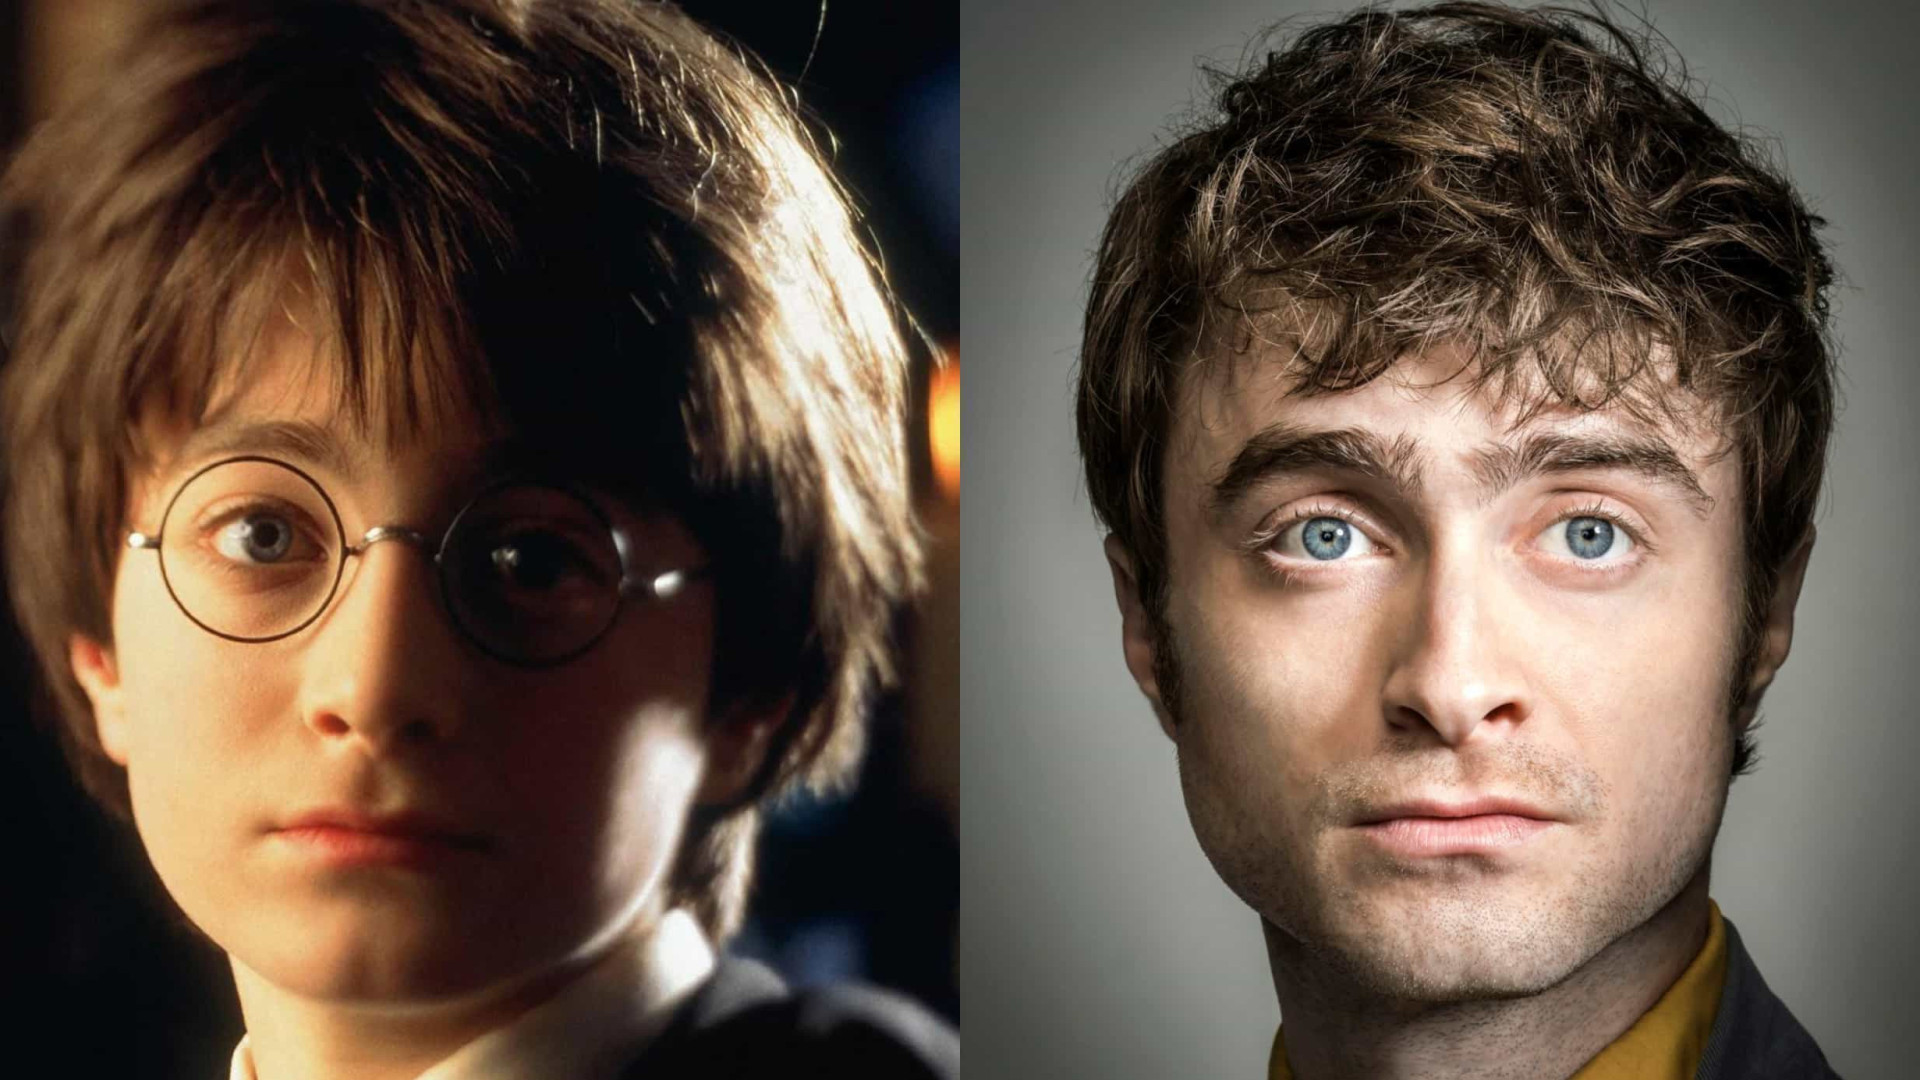 Harry Potter - 20 Anos de Magia: De Volta a Hogwarts - Filme 2021